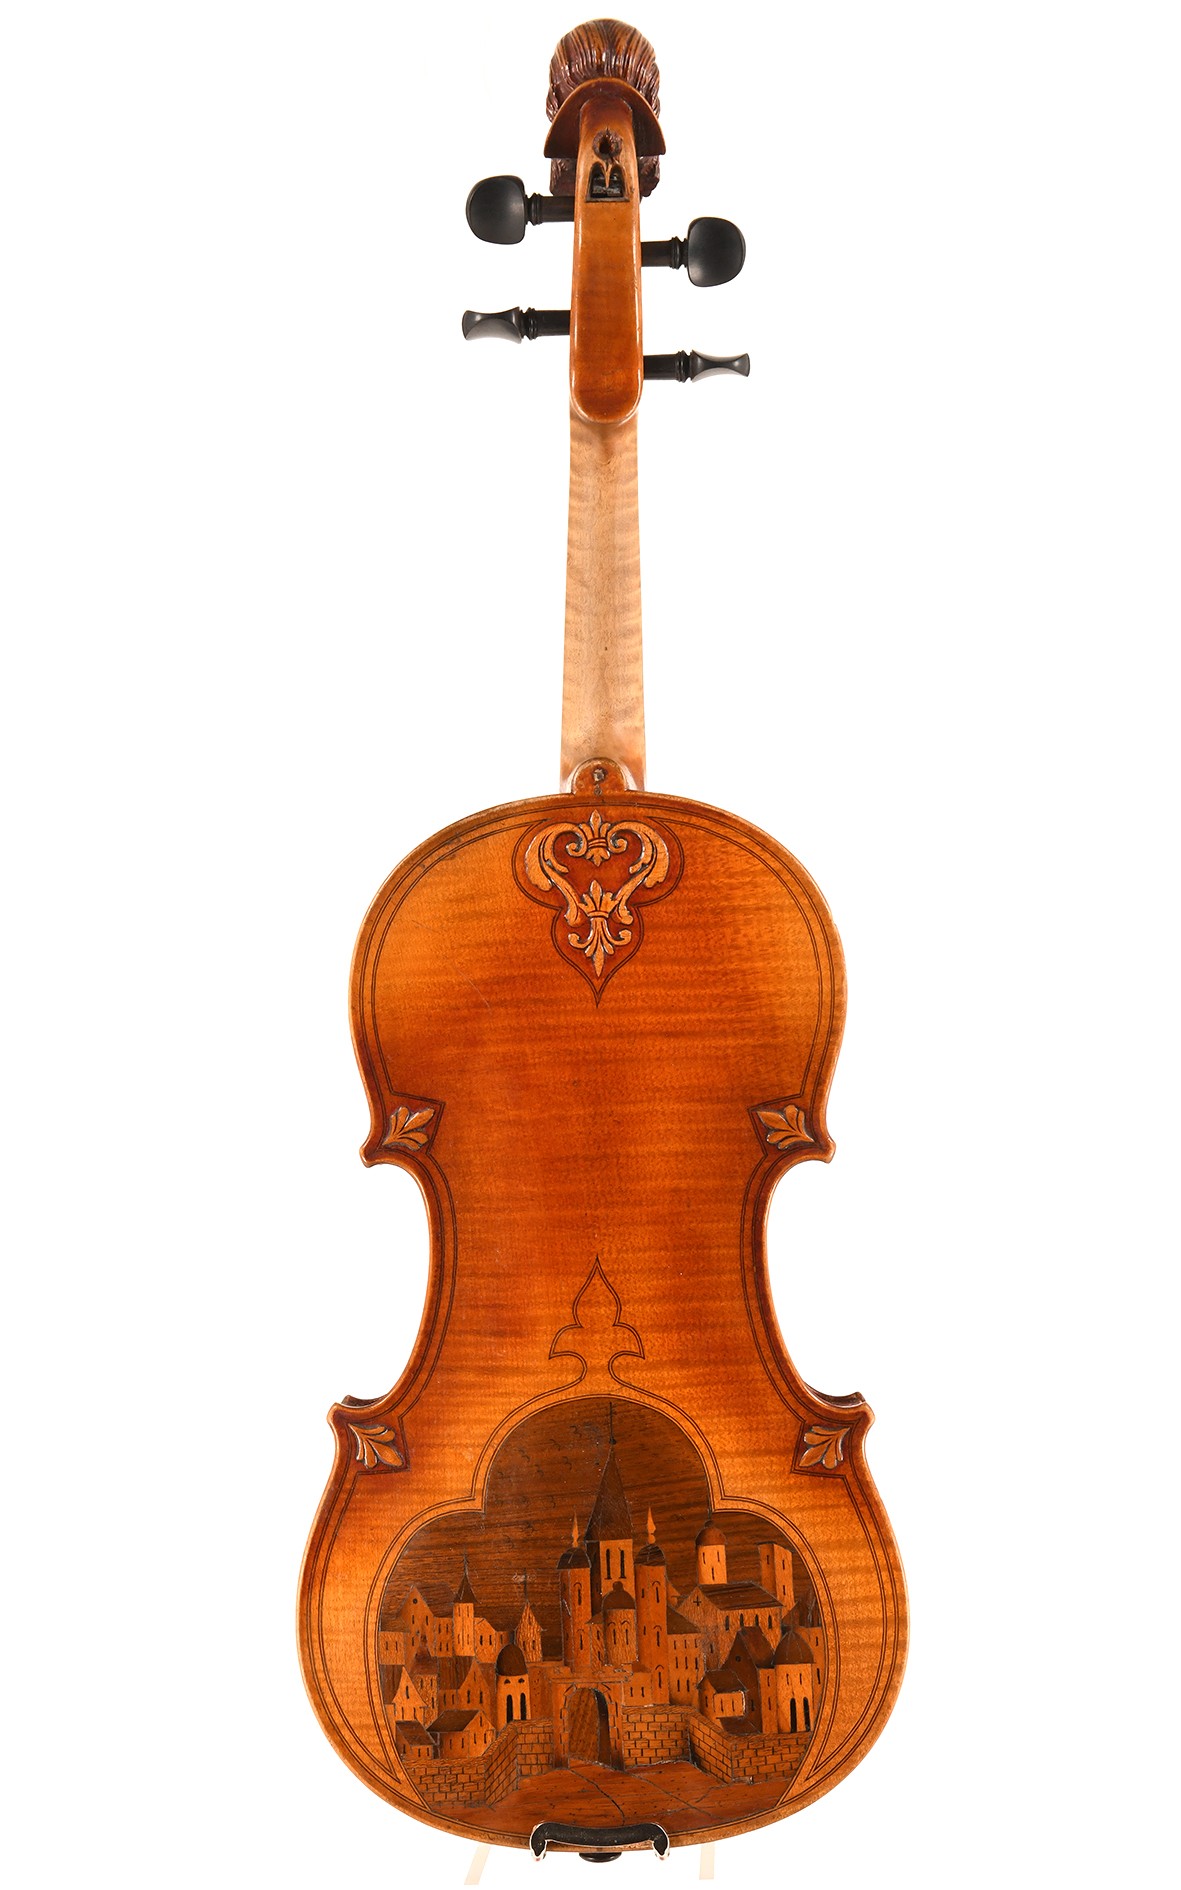 French violin, Tiefenbrucker around 1890